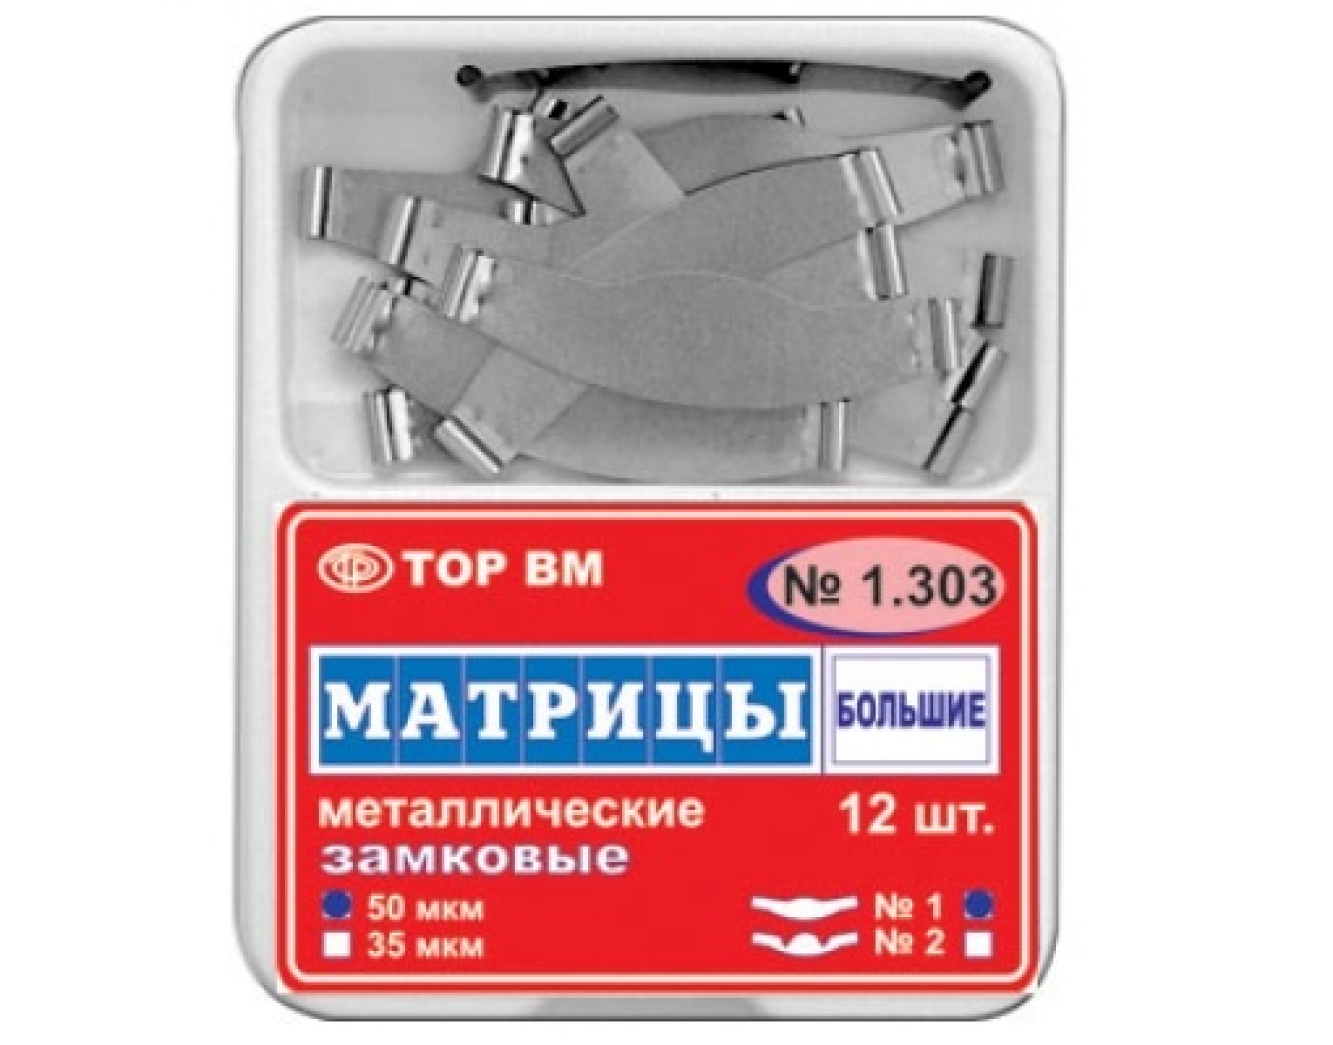 Матрицы металлические, плоские, с замковым фиксирующим устройством, большие, 1.303, ТОР ВМ (Россия)